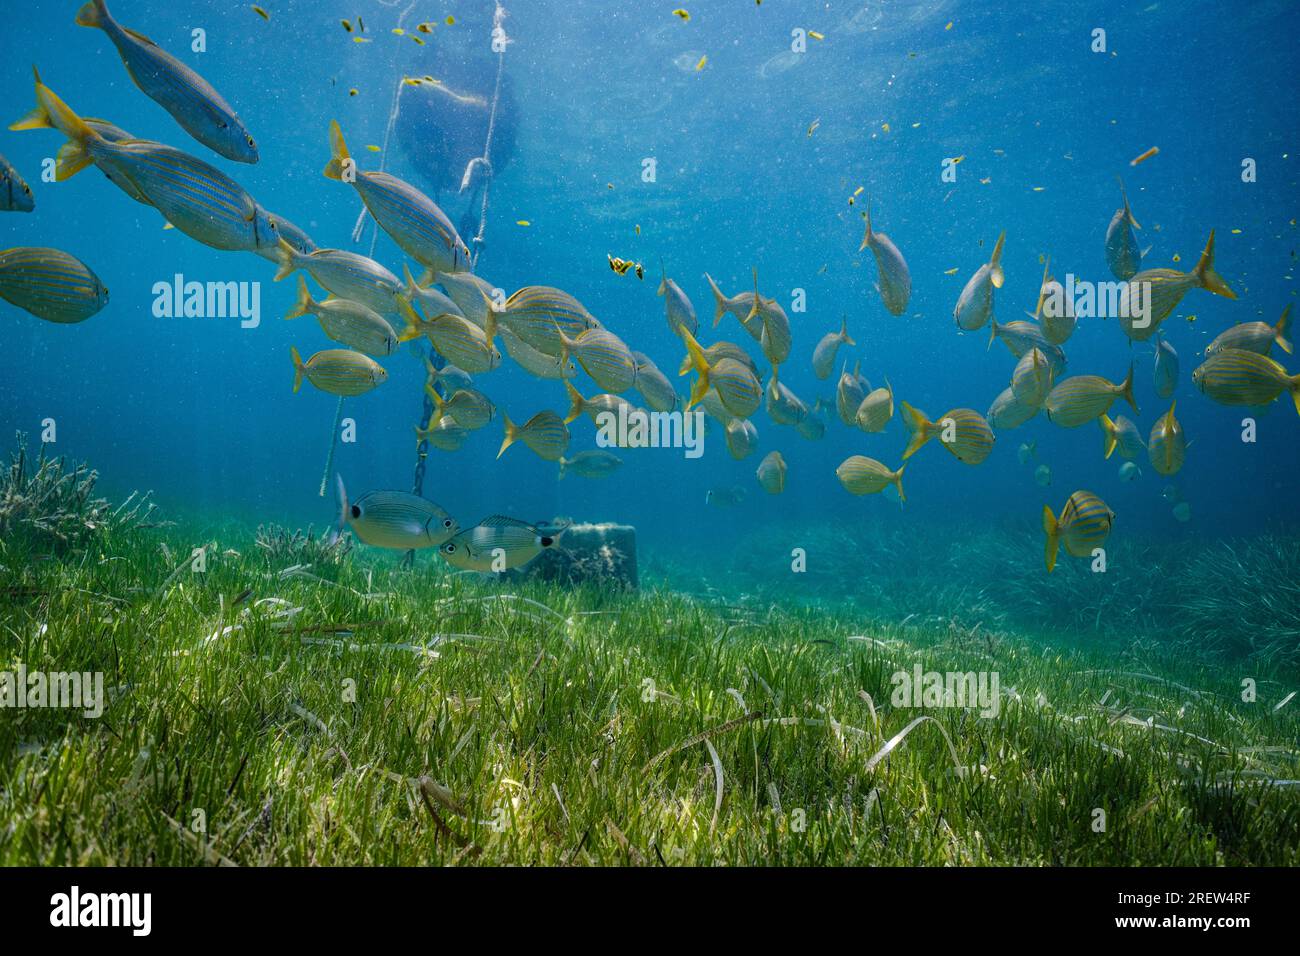 Schule exotischer Fische, die unter Wasser mit üppigem grünen Gras an sonnigen Tagen in der Nähe von Felsen und Ketten vom Boot schwimmen Stockfoto